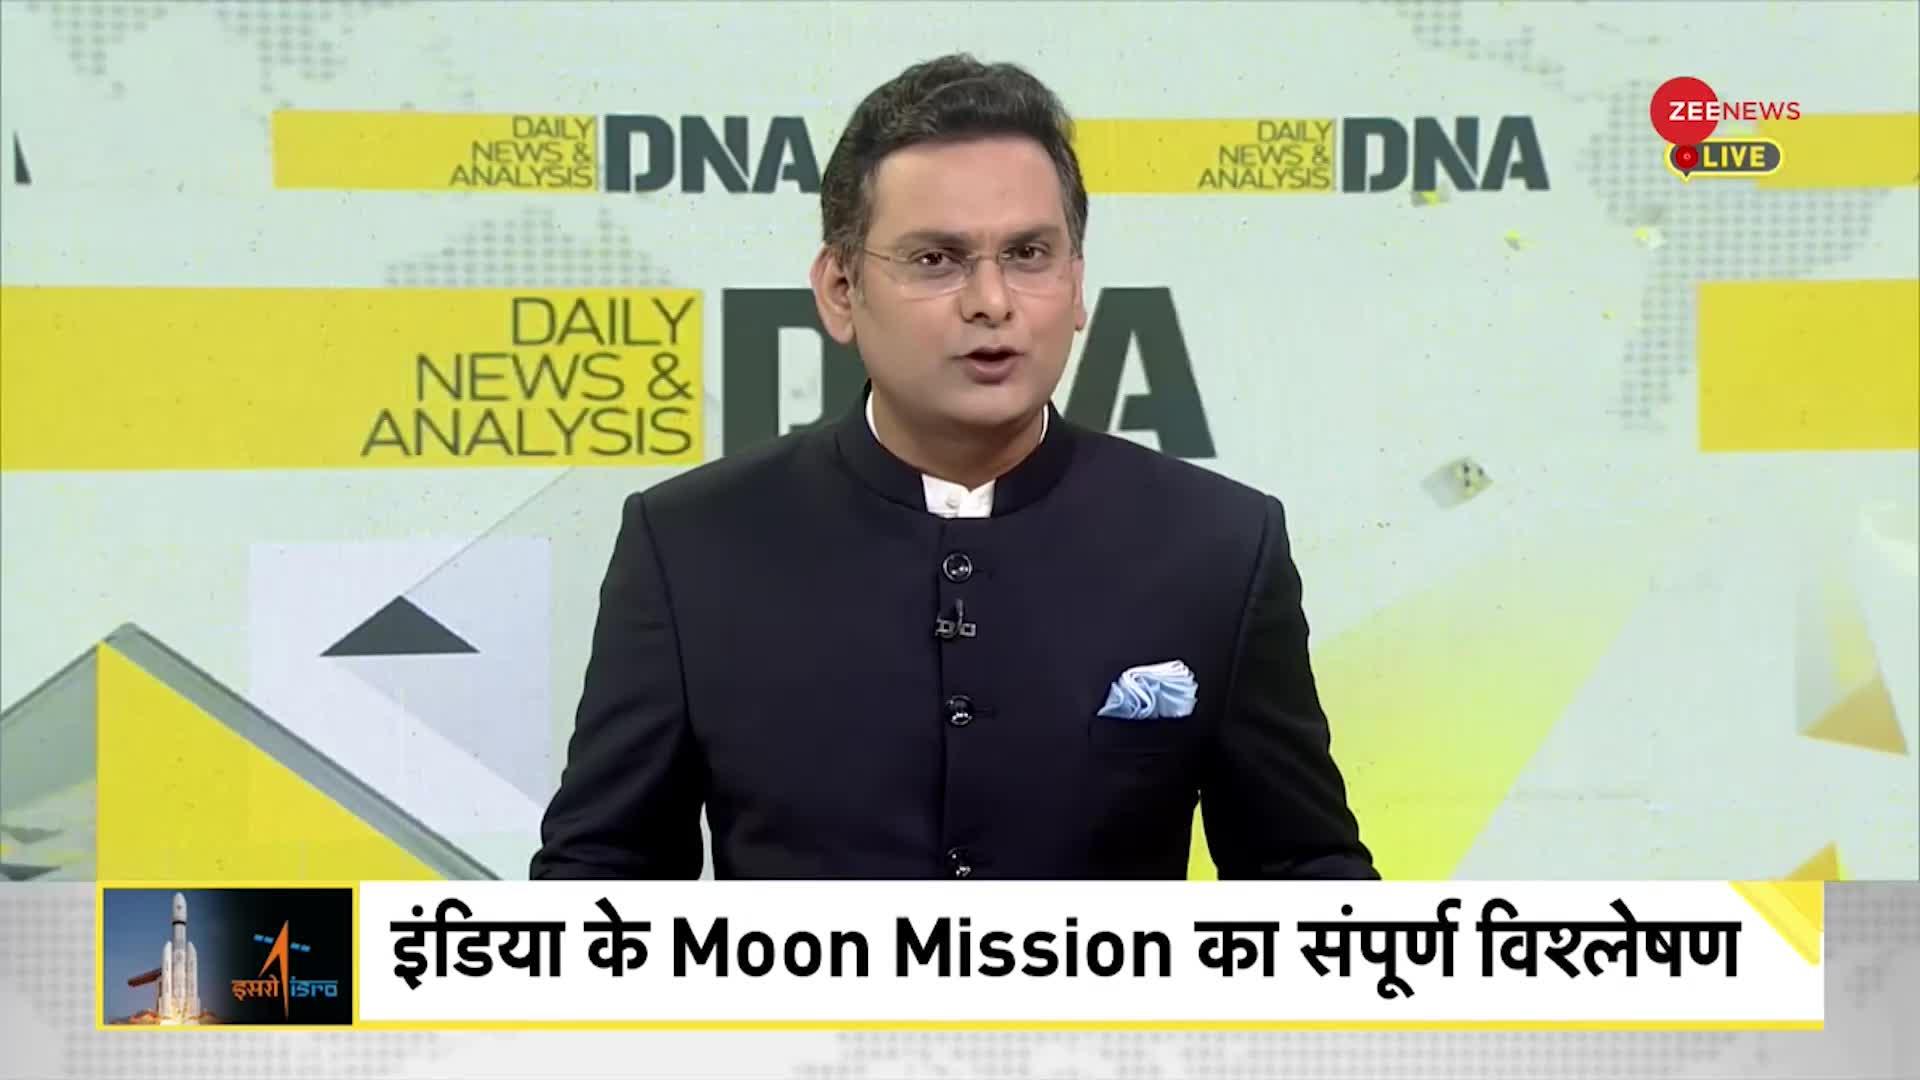 DNA: इंडिया के Moon Mission का संपूर्ण विश्लेषण, सफल उड़ान..मेरा भारत महान